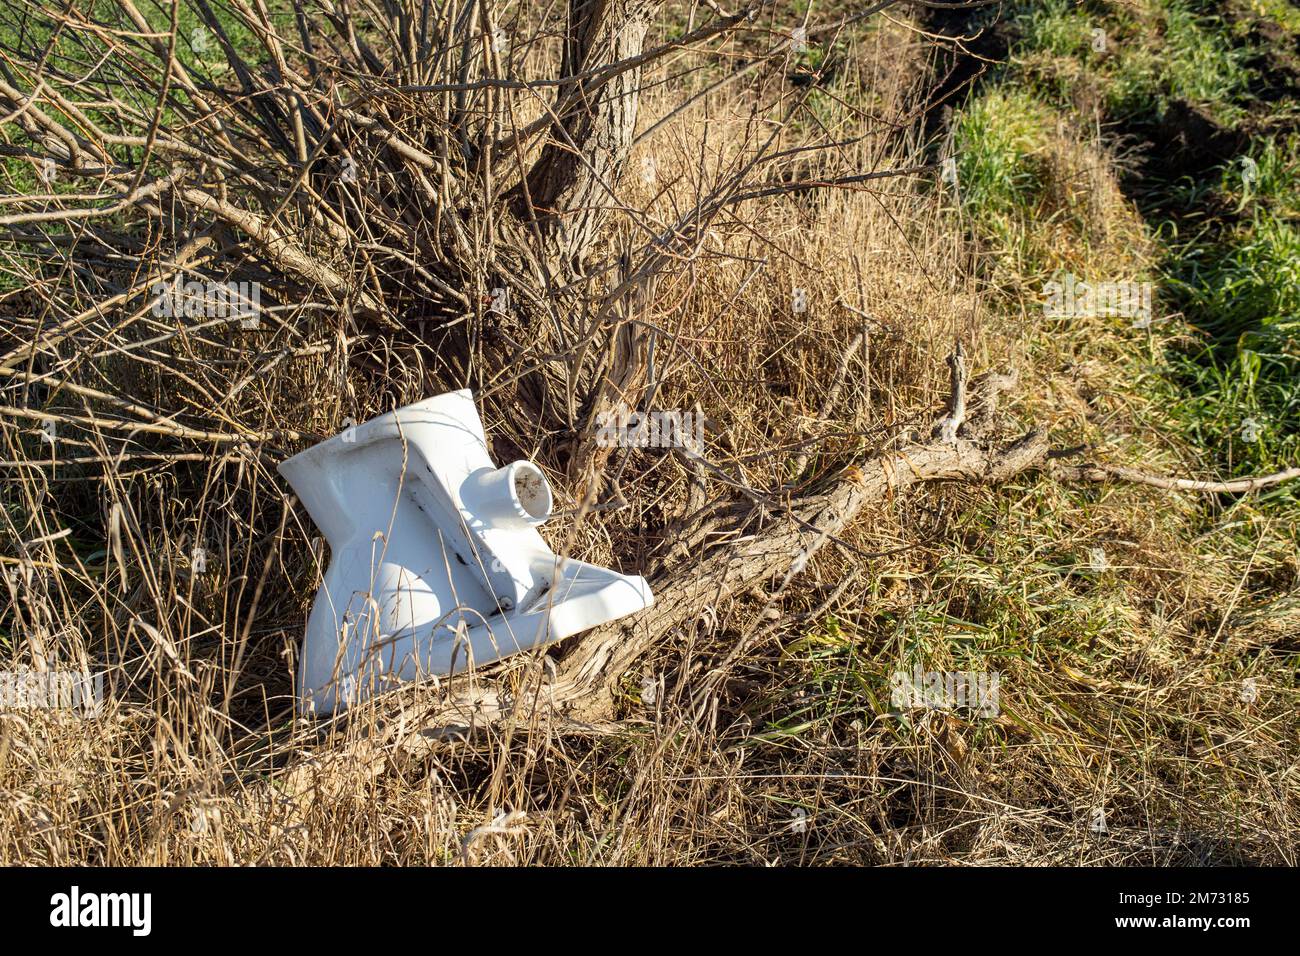 Ceramic toilet seat thrown under a willow tree Stock Photo